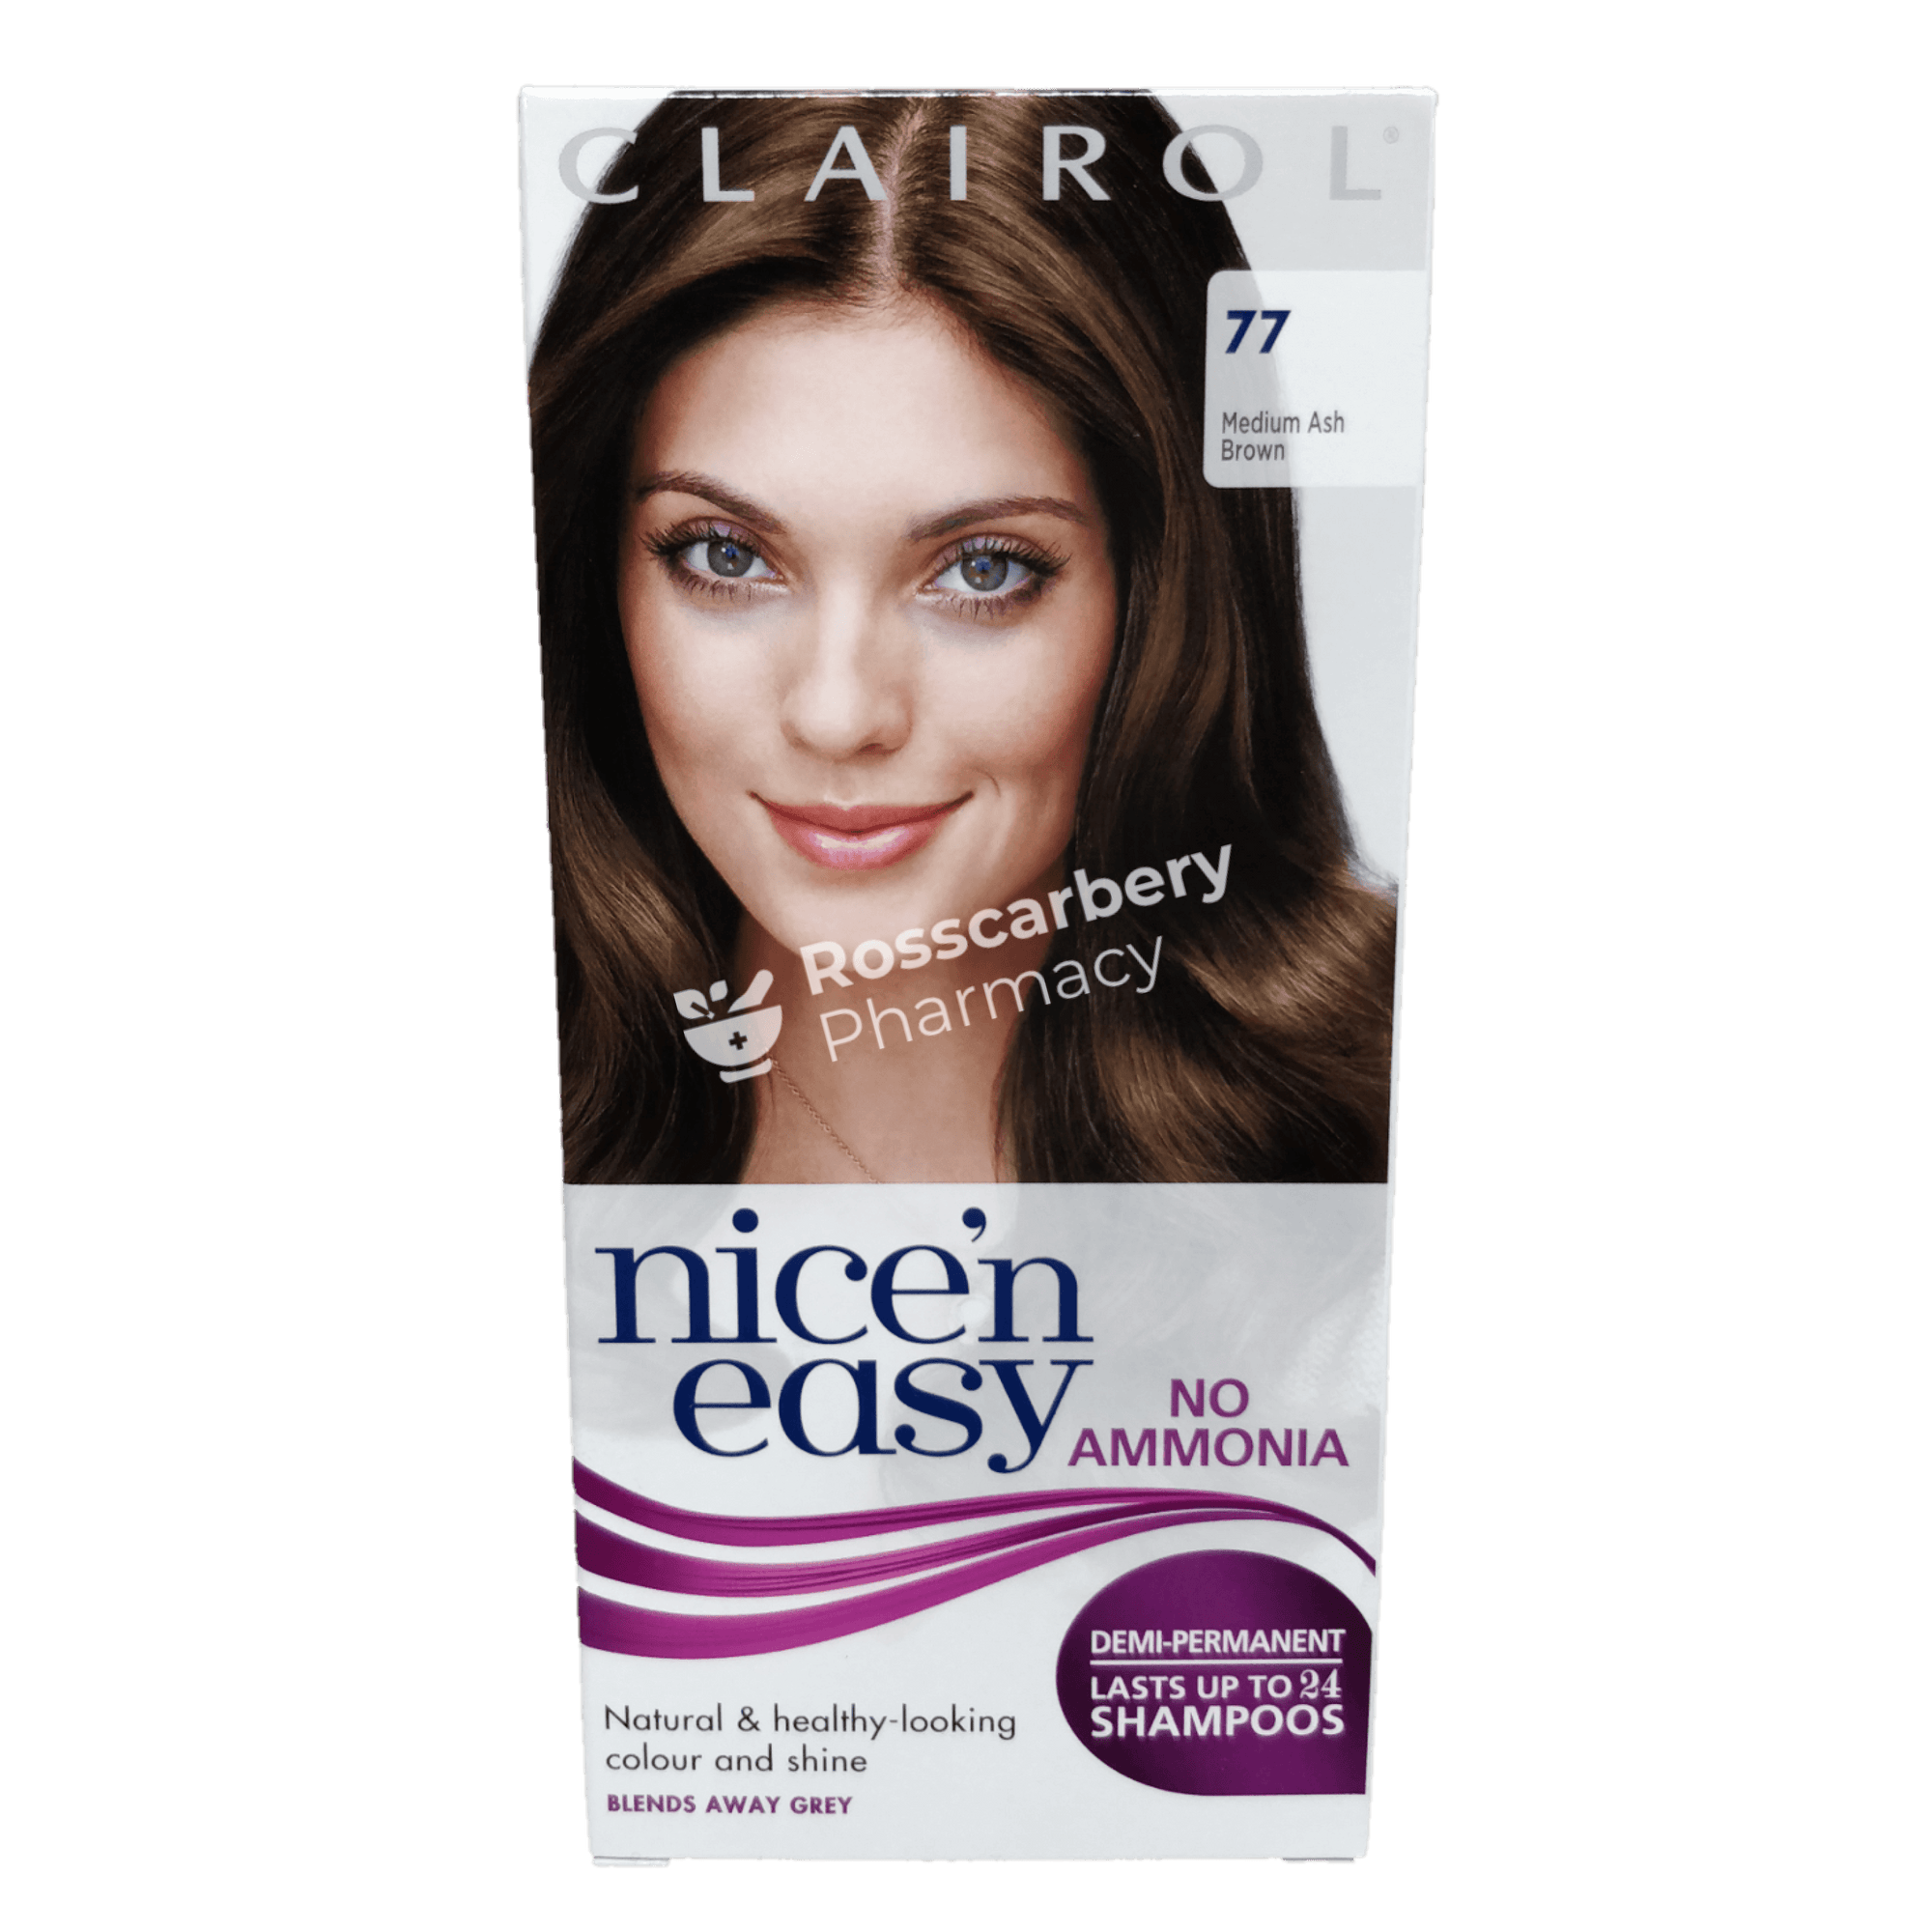 Clairol - Nicen Easy Demi-Permanent 77 Medium Ash Brown Hair Colouring